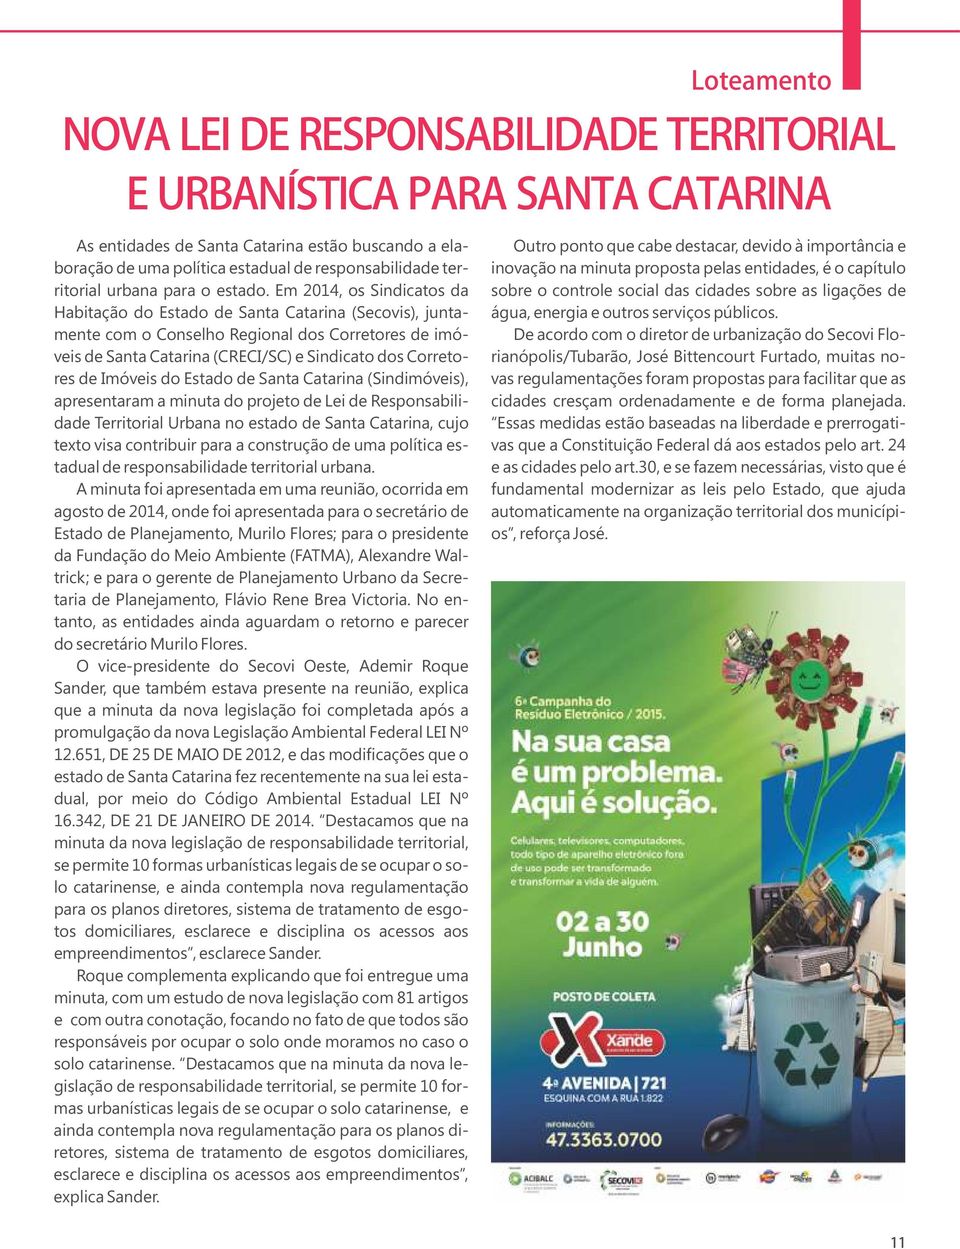 Em 2014, os Sindicatos da Habitação do Estado de Santa Catarina (Secovis), juntamente com o Conselho Regional dos Corretores de imóveis de Santa Catarina (CRECI/SC) e Sindicato dos Corretores de